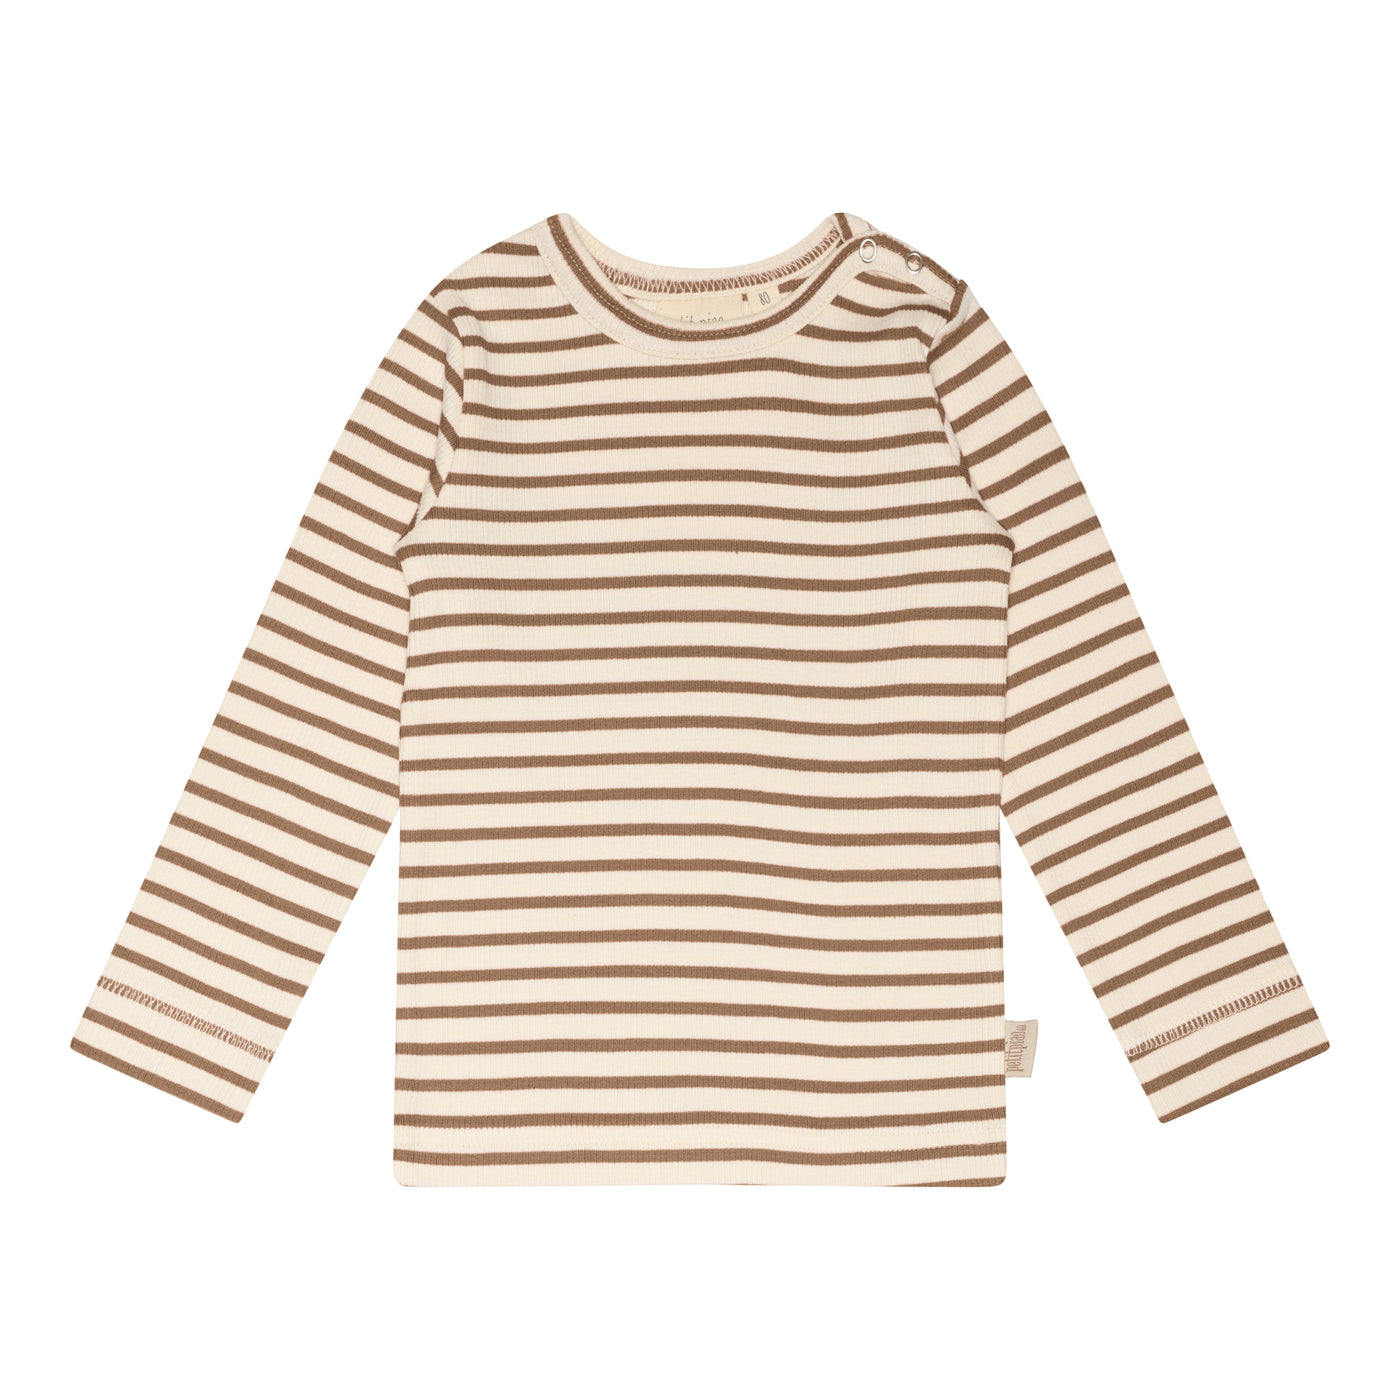 T-shirt L/S Modal Striped Walnut Brown.